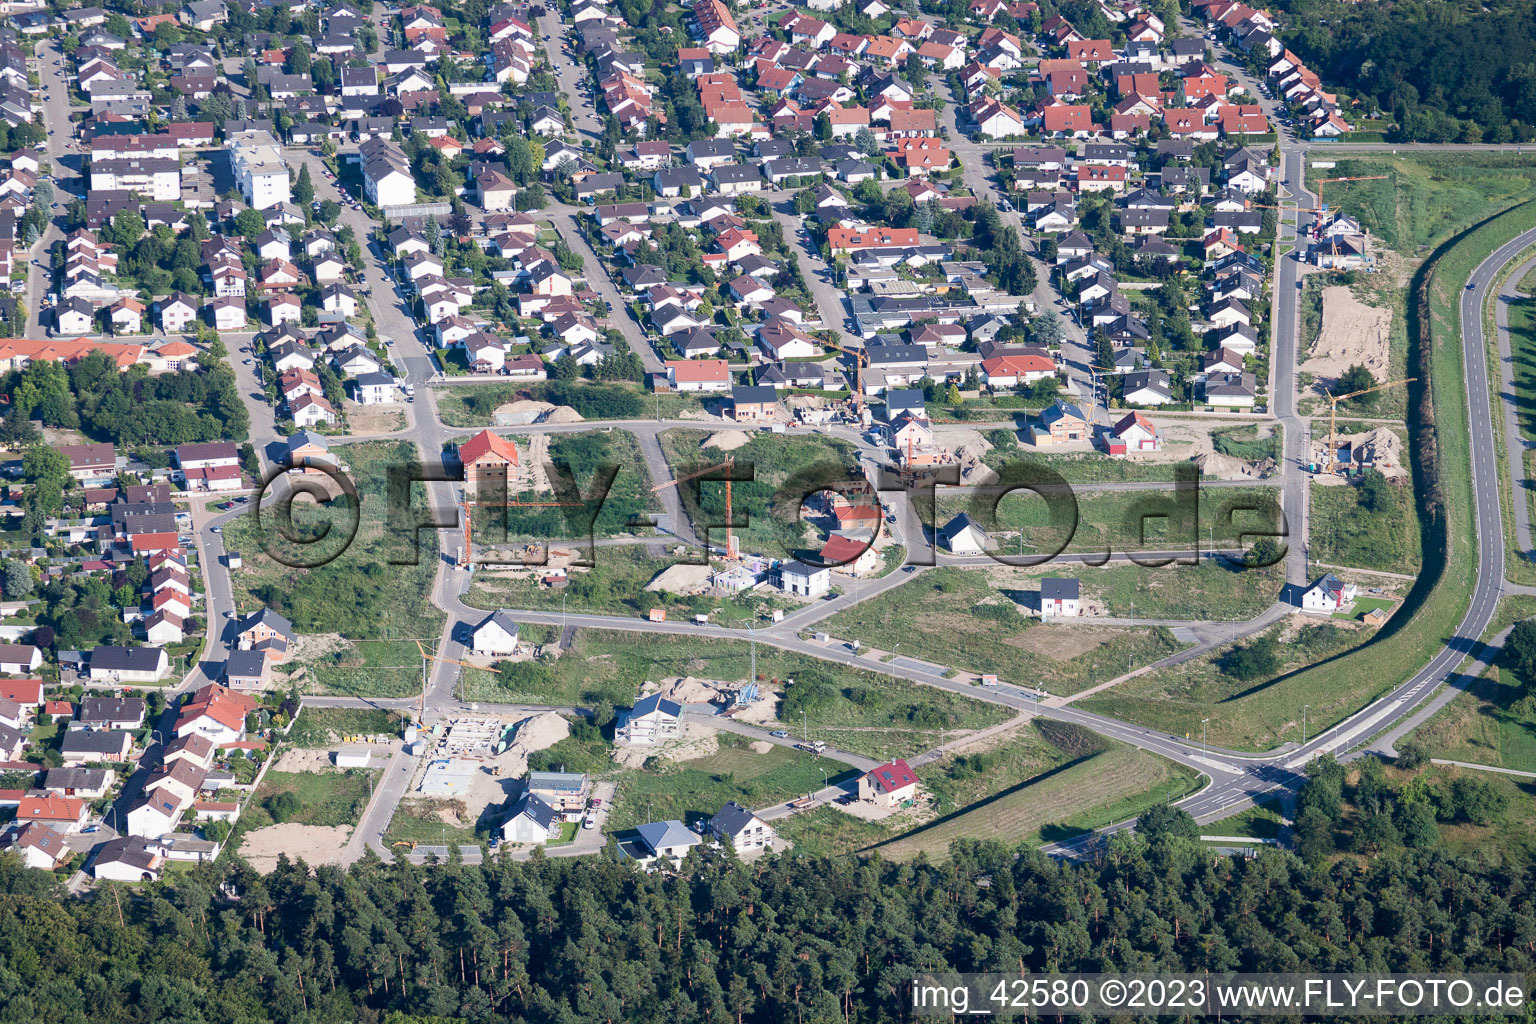 Nouvelle zone de développement ouest à Jockgrim dans le département Rhénanie-Palatinat, Allemagne d'en haut